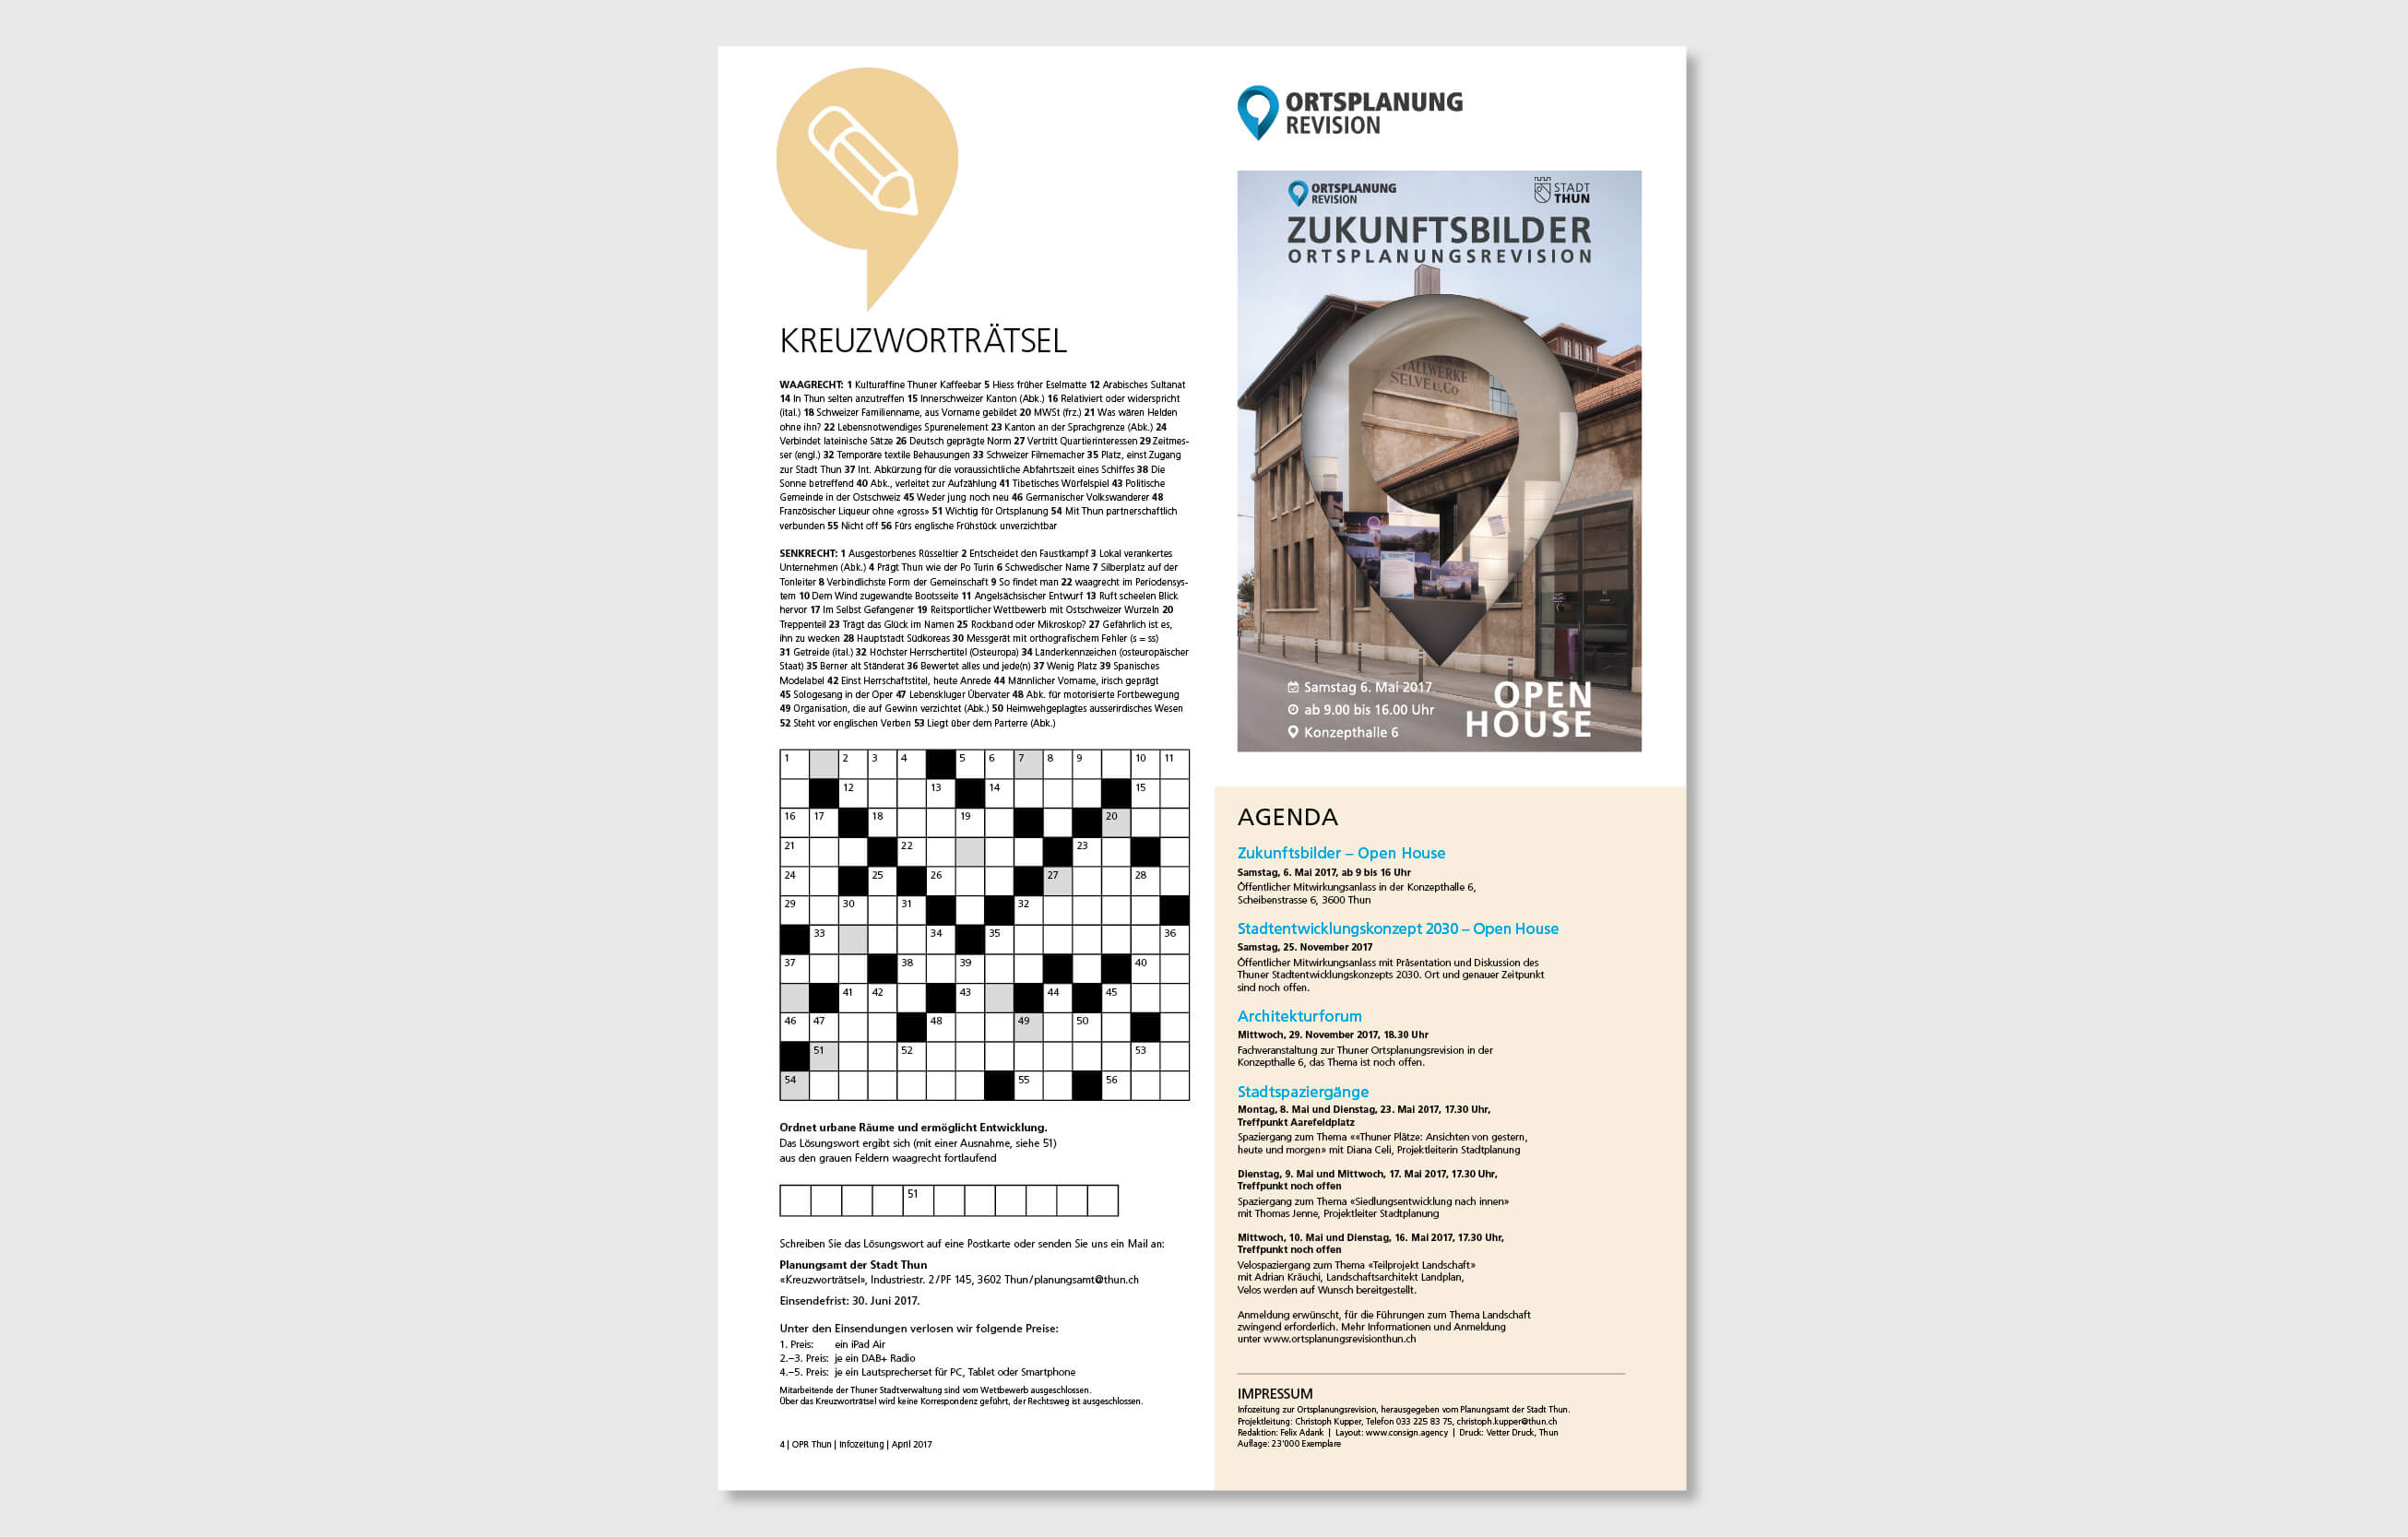 ortsplanungsrevision thun design infozeitung by consign | Agentur für Branding und Kommunikation